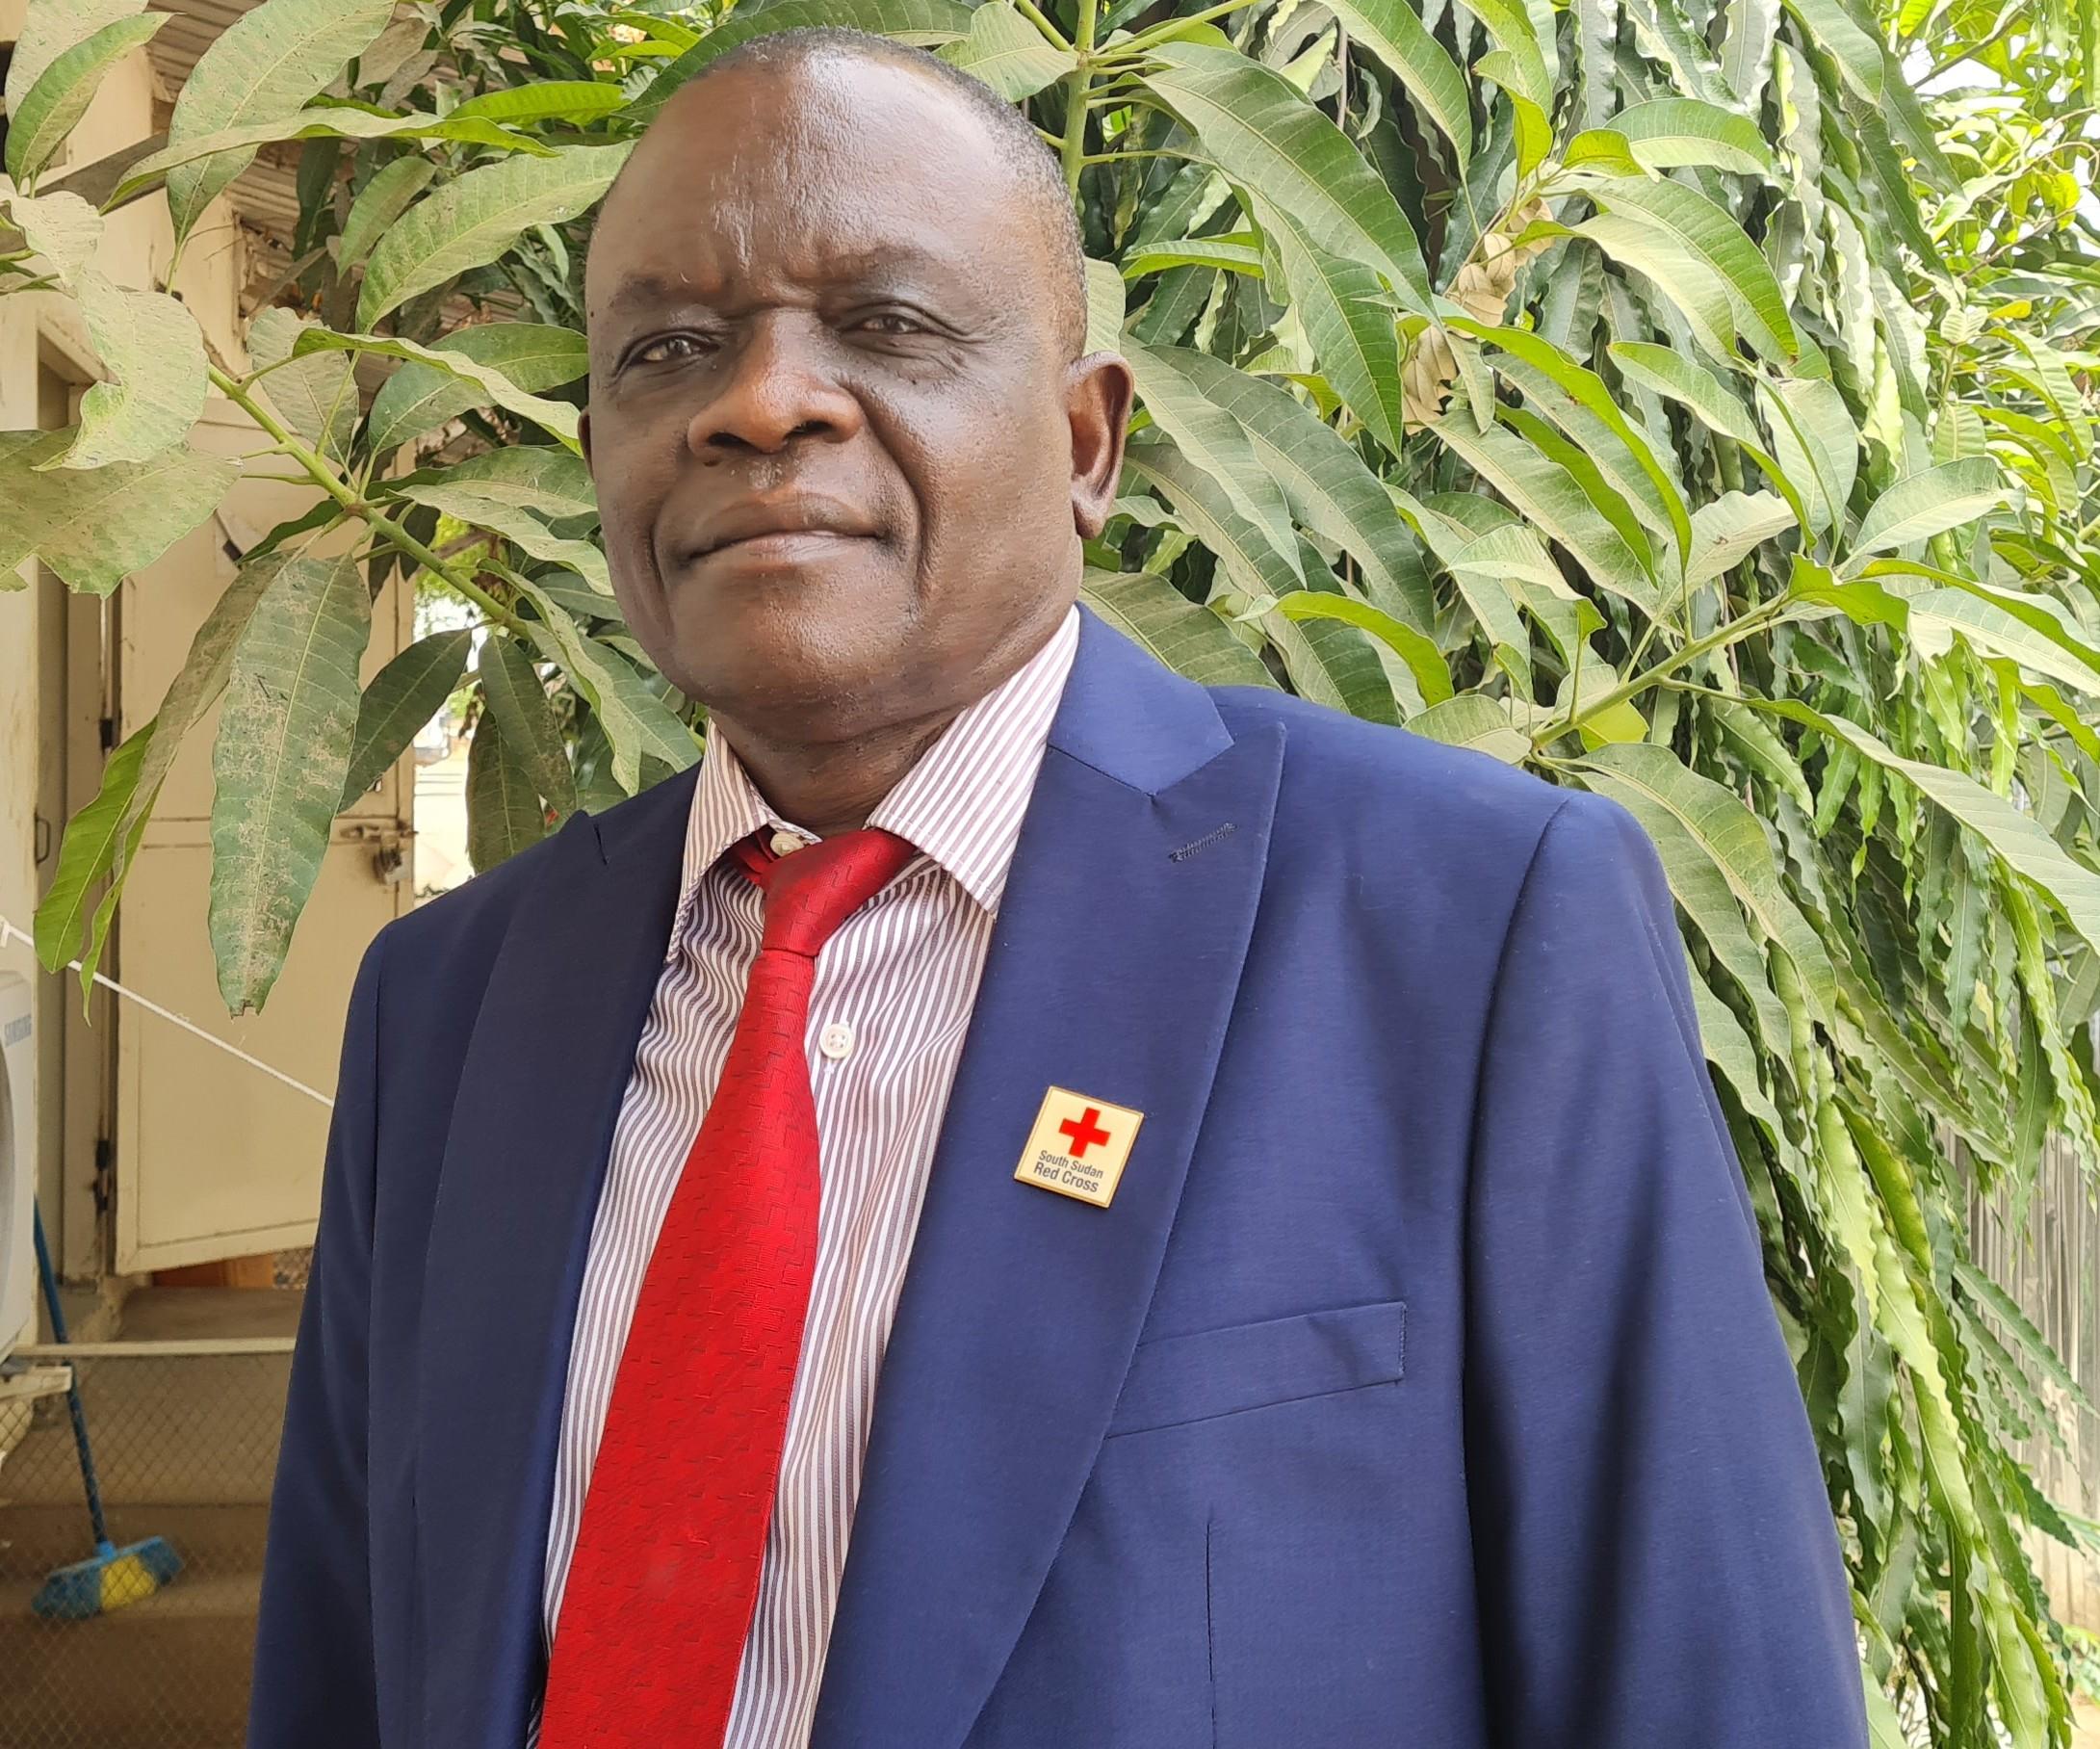 Photo portrait de John Lobor. Il porte un costume bleu avec une cravate rouge et un badge de la Croix-Rouge sud-soudanaise.